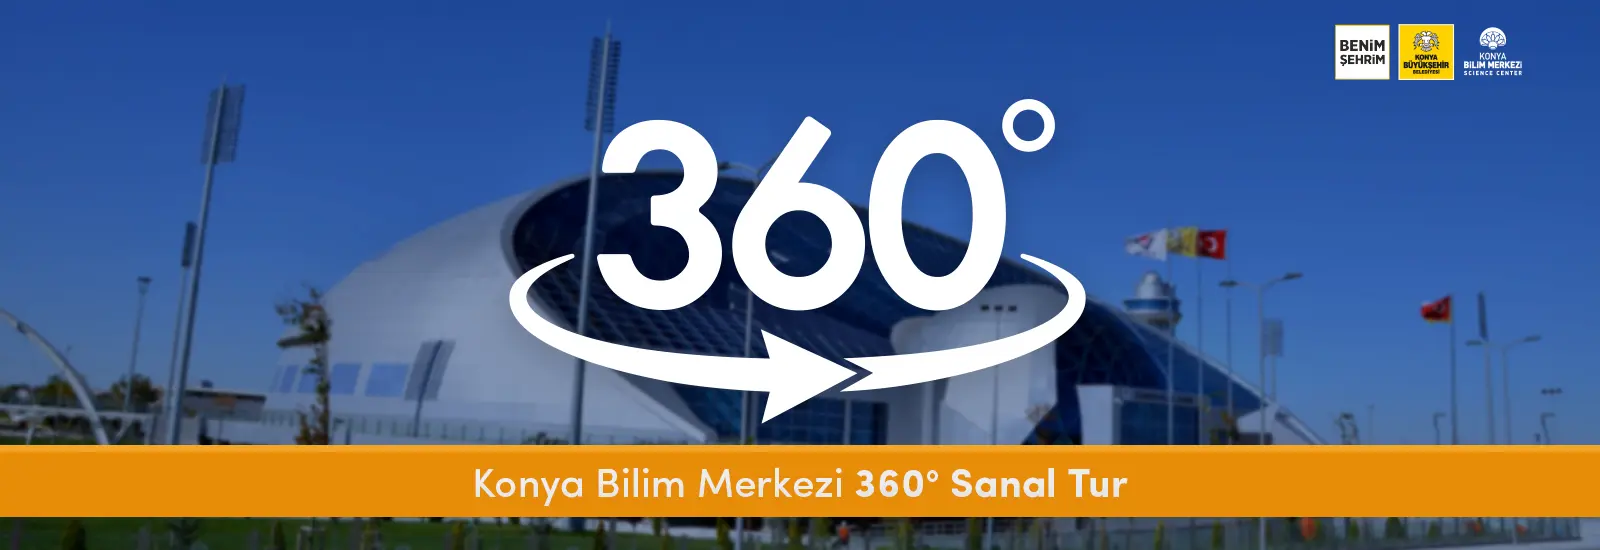 Konya Bilim Merkezi 360° Sanal Tur 360° Sanal Tur